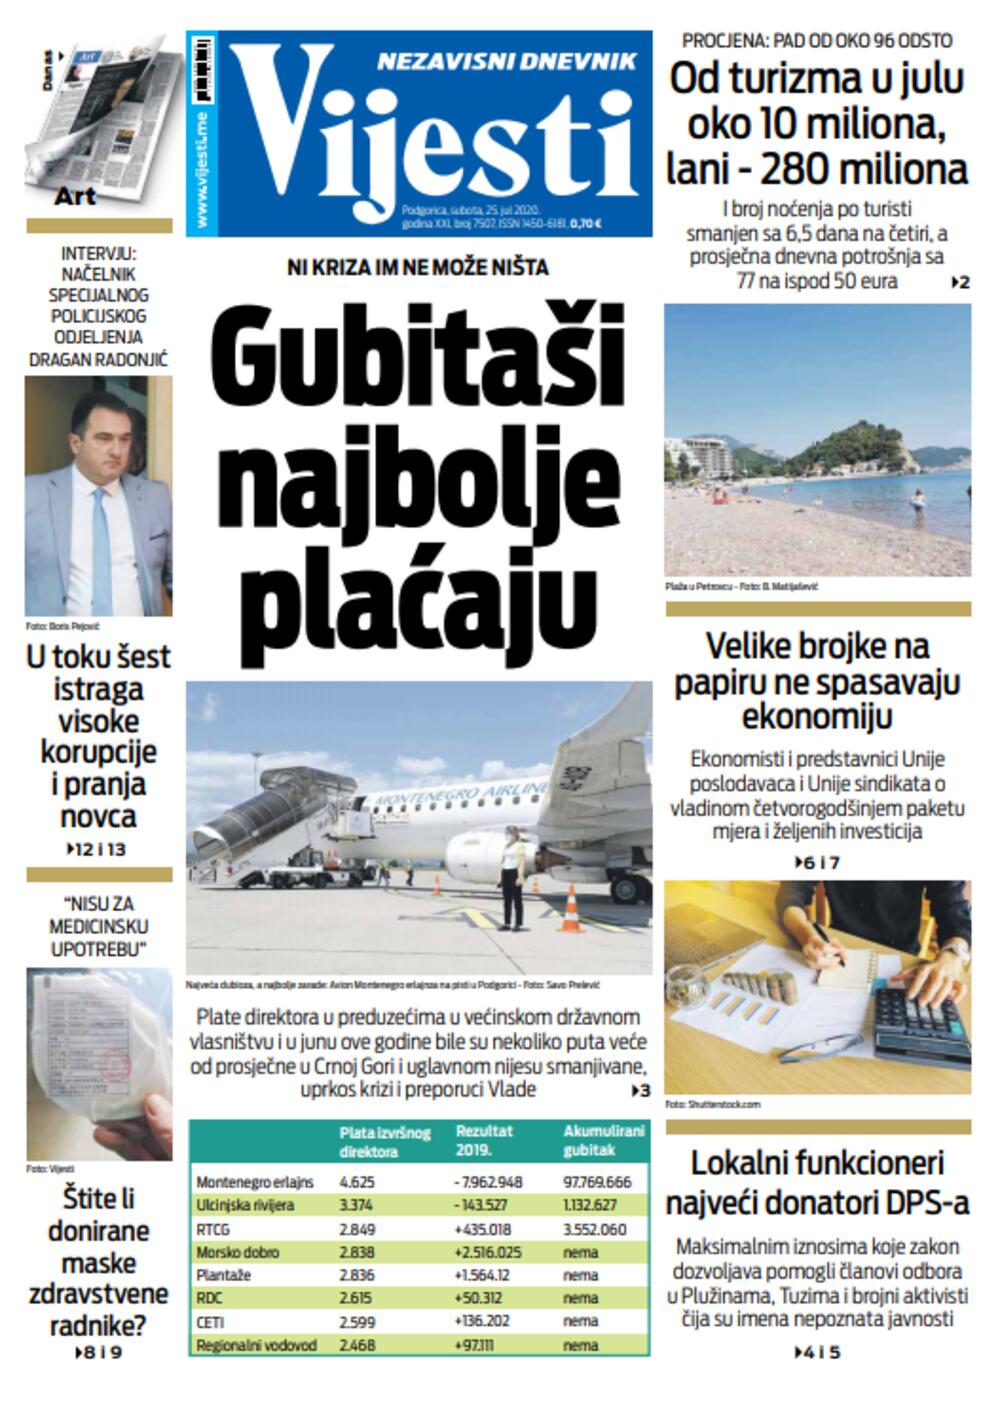 Naslovna strana "Vijesti" za 25. jul, Foto: Vijesti